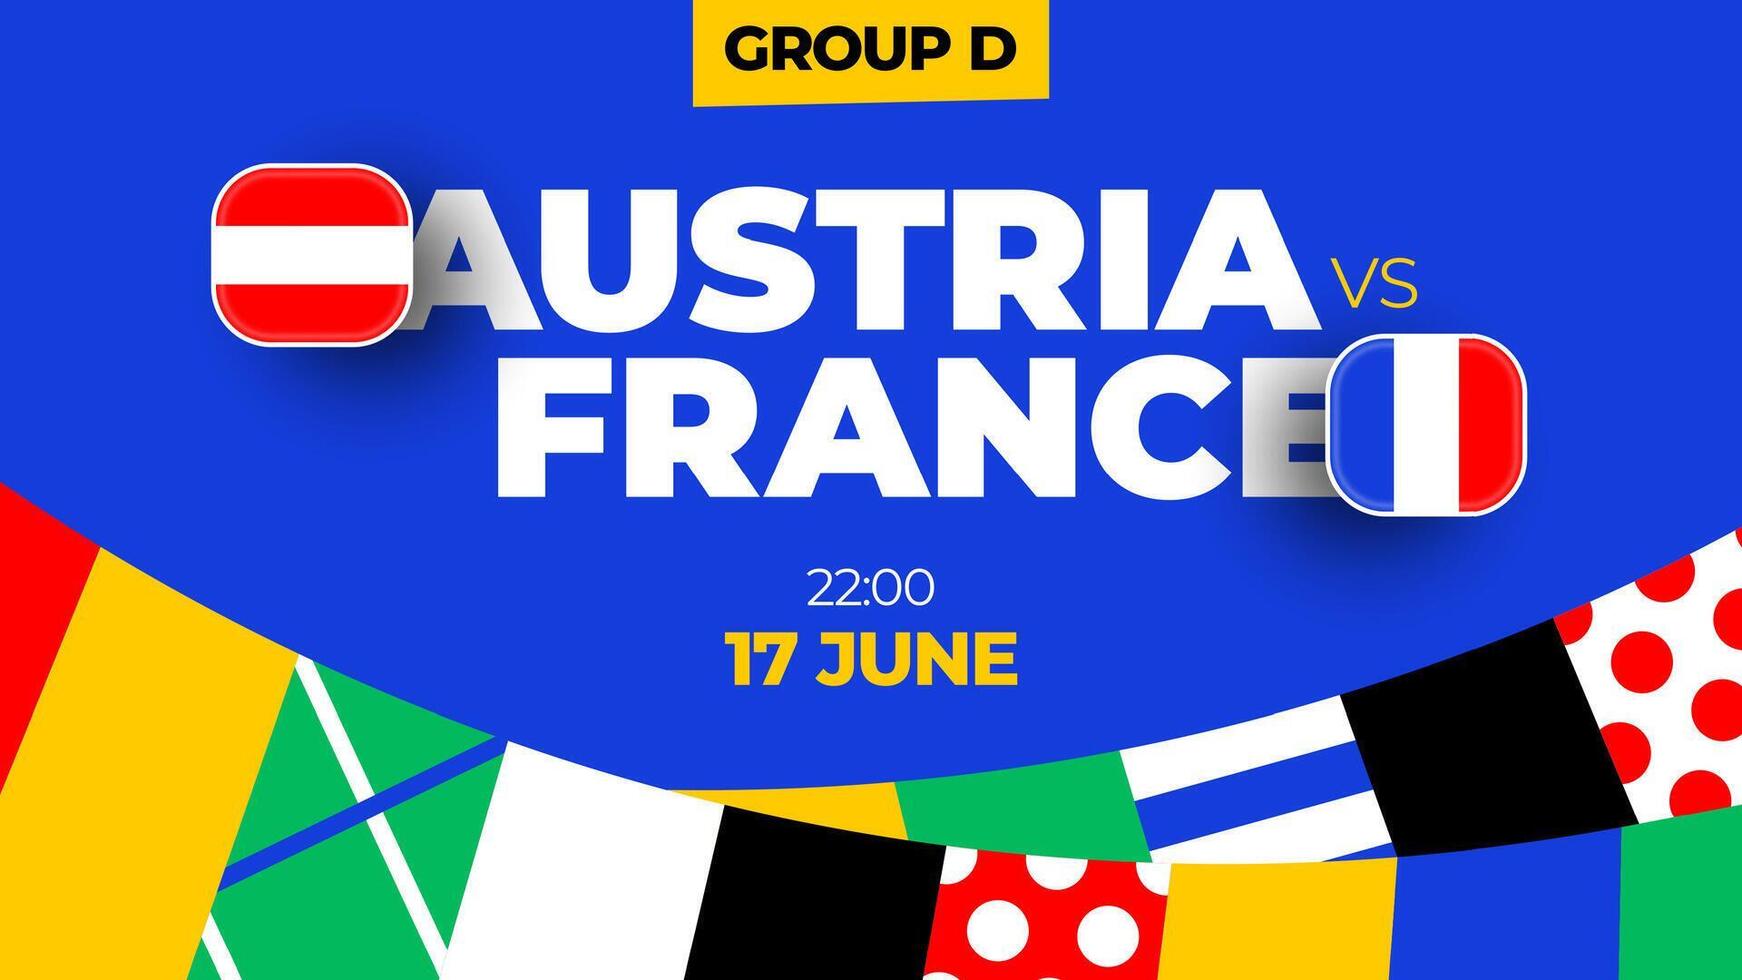 L'Autriche contre France Football 2024 rencontre contre. 2024 groupe étape championnat rencontre contre équipes intro sport arrière-plan, championnat compétition vecteur